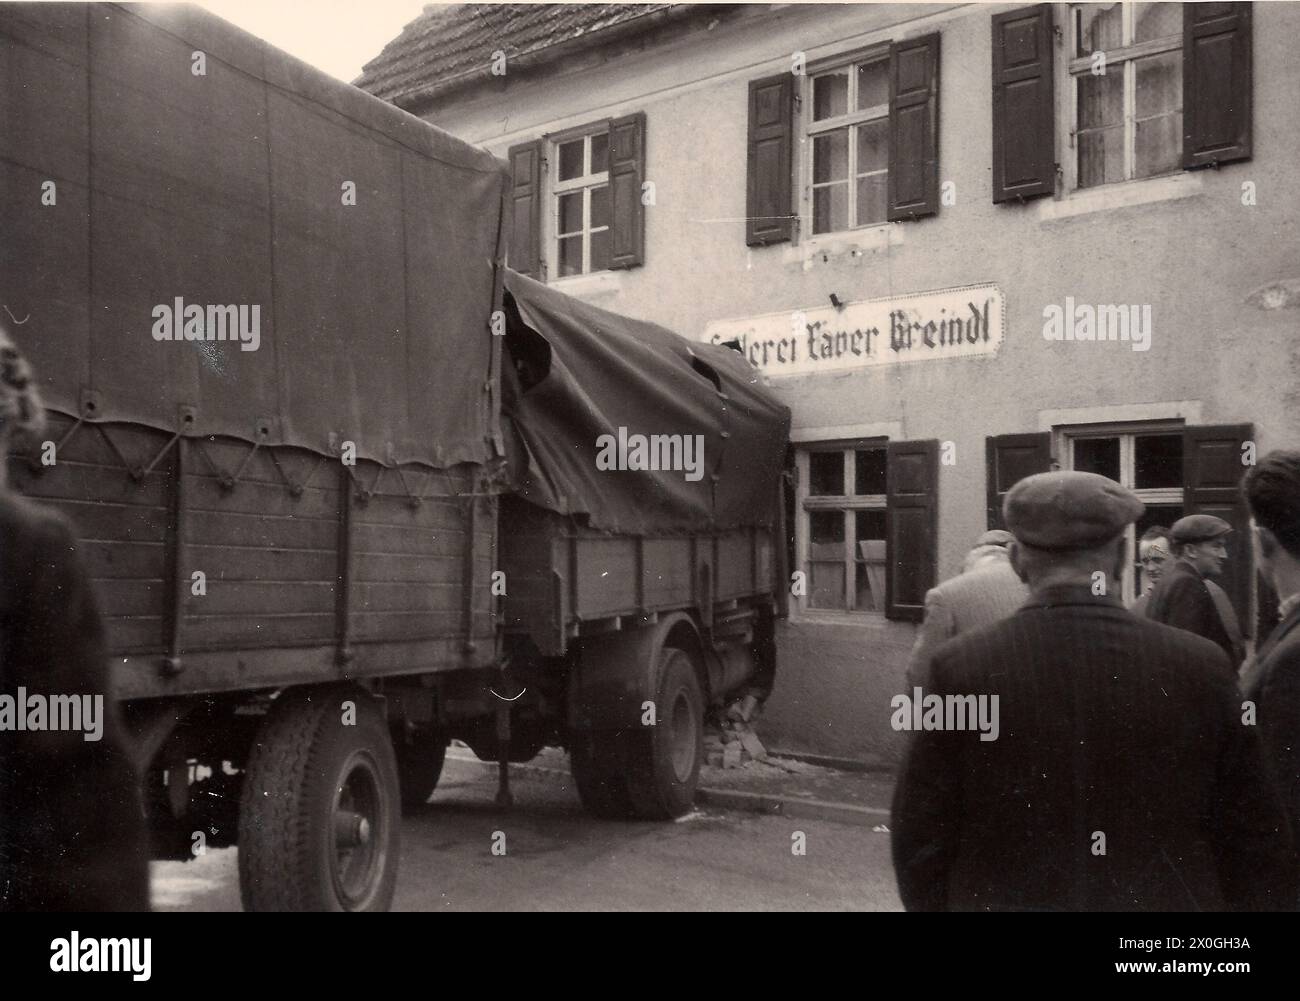 Ein LKW mit Anhänger, der in die Wand einer Sattlerei gebracht wird. Foto, das 1962 an einem unbekannten Ort aufgenommen wurde. [Automatisierte Übersetzung] Stockfoto